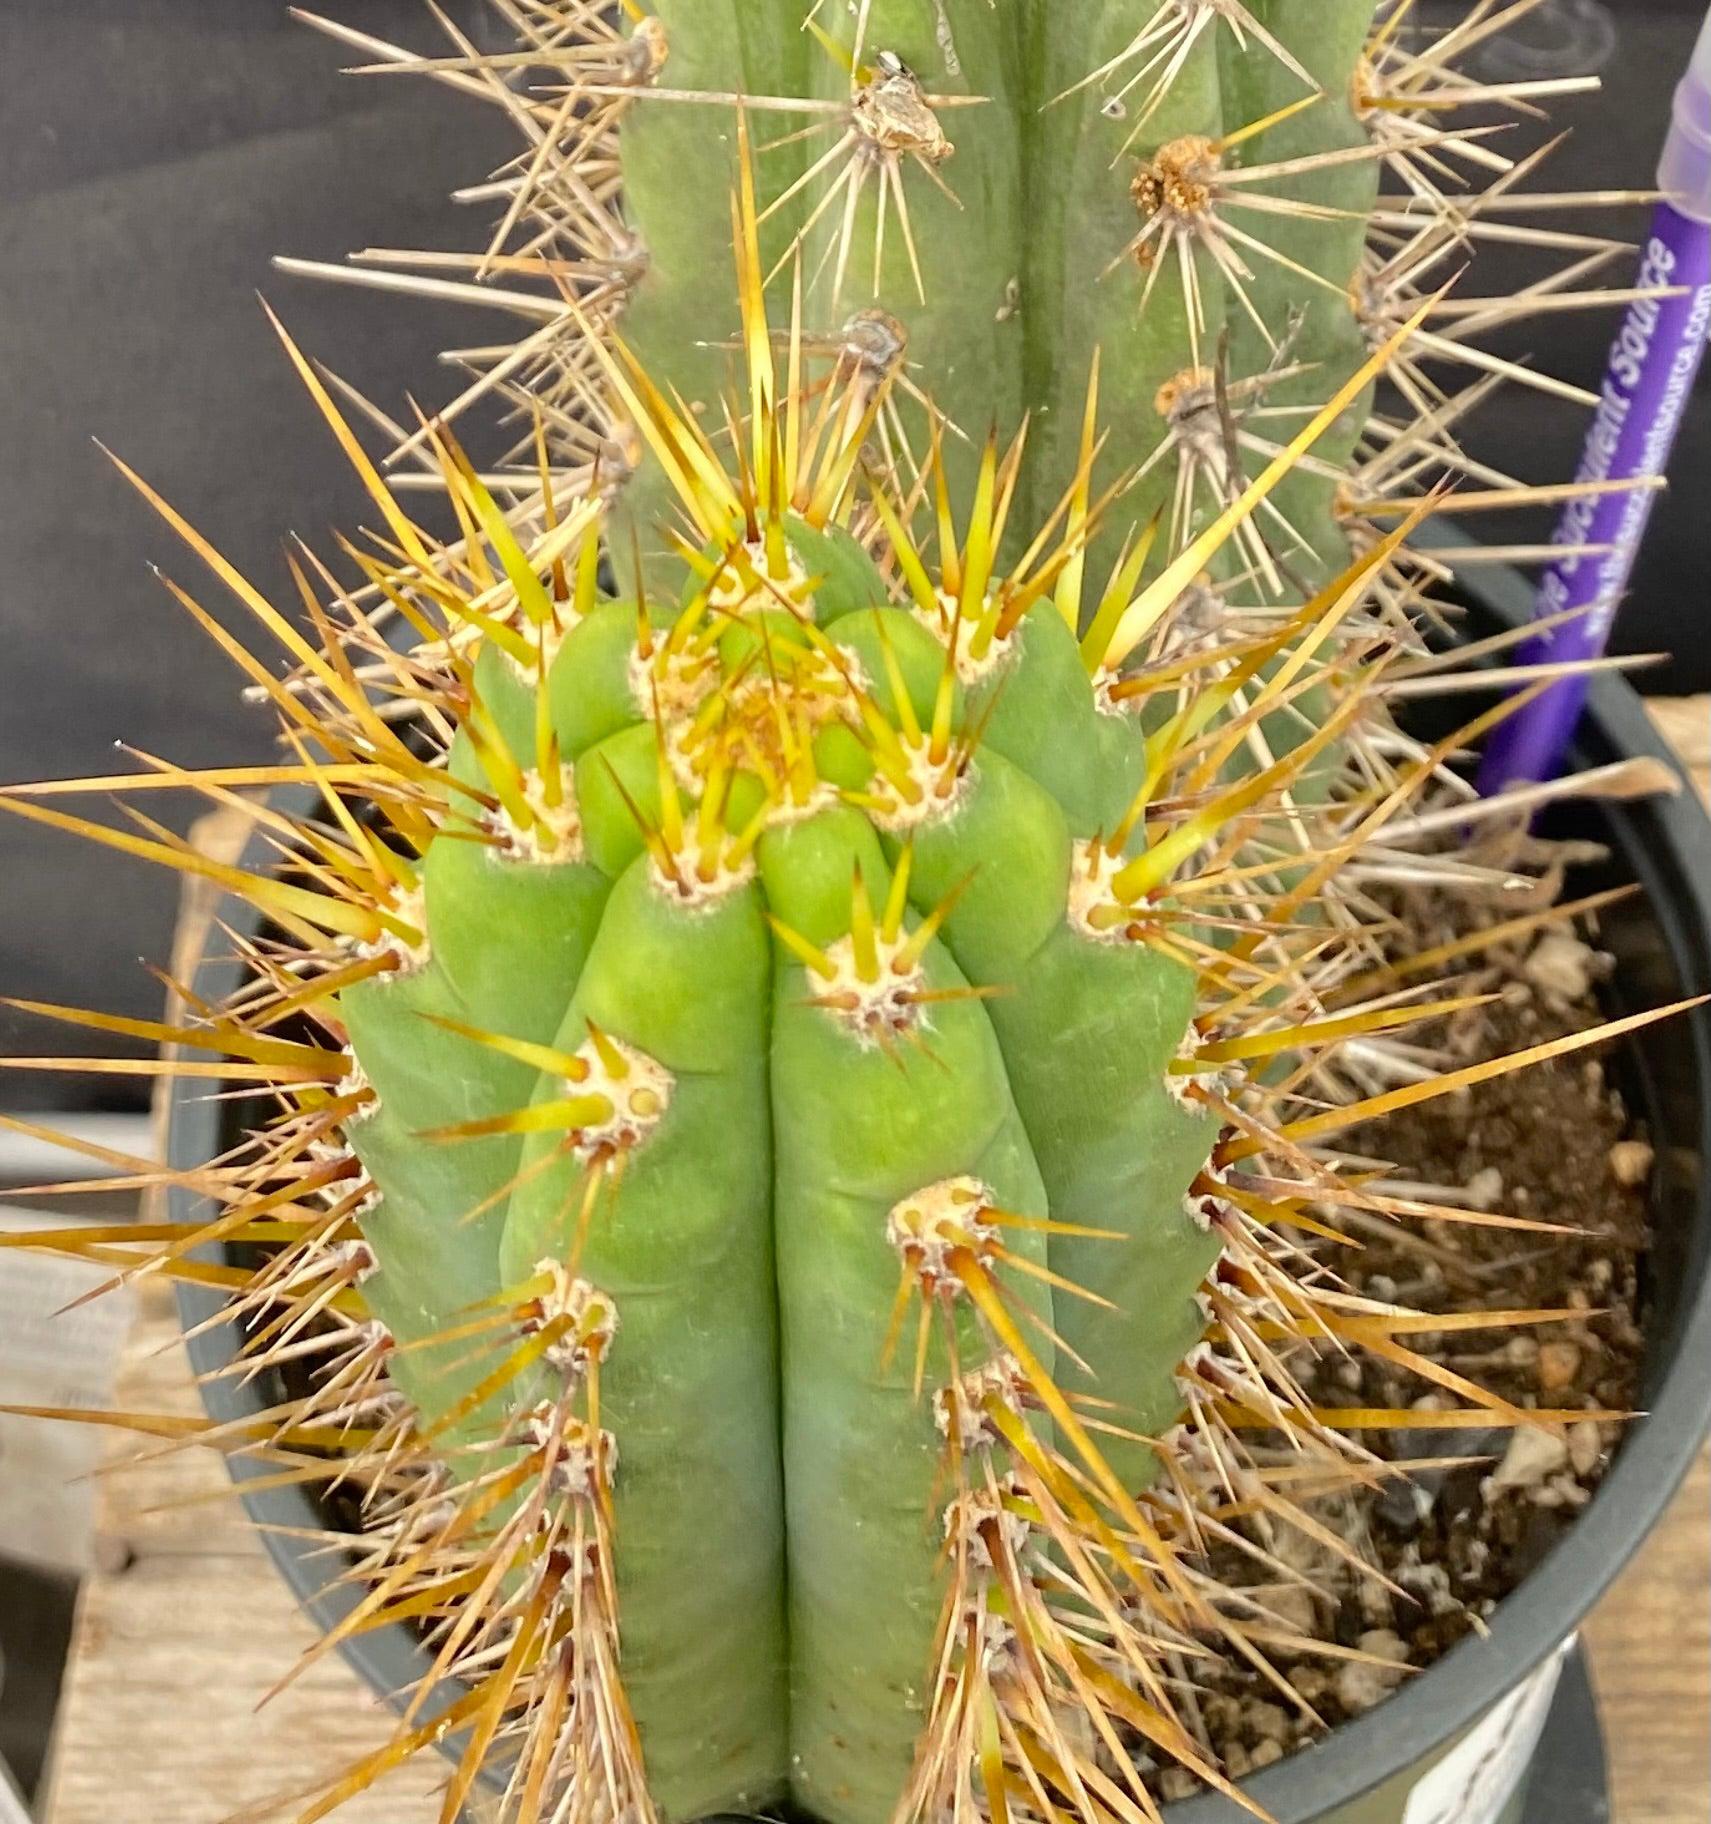 #EC95 EXACT Trichocereus Cuzcoensis Cactus 24 "-Cactus - Large - Exact-The Succulent Source